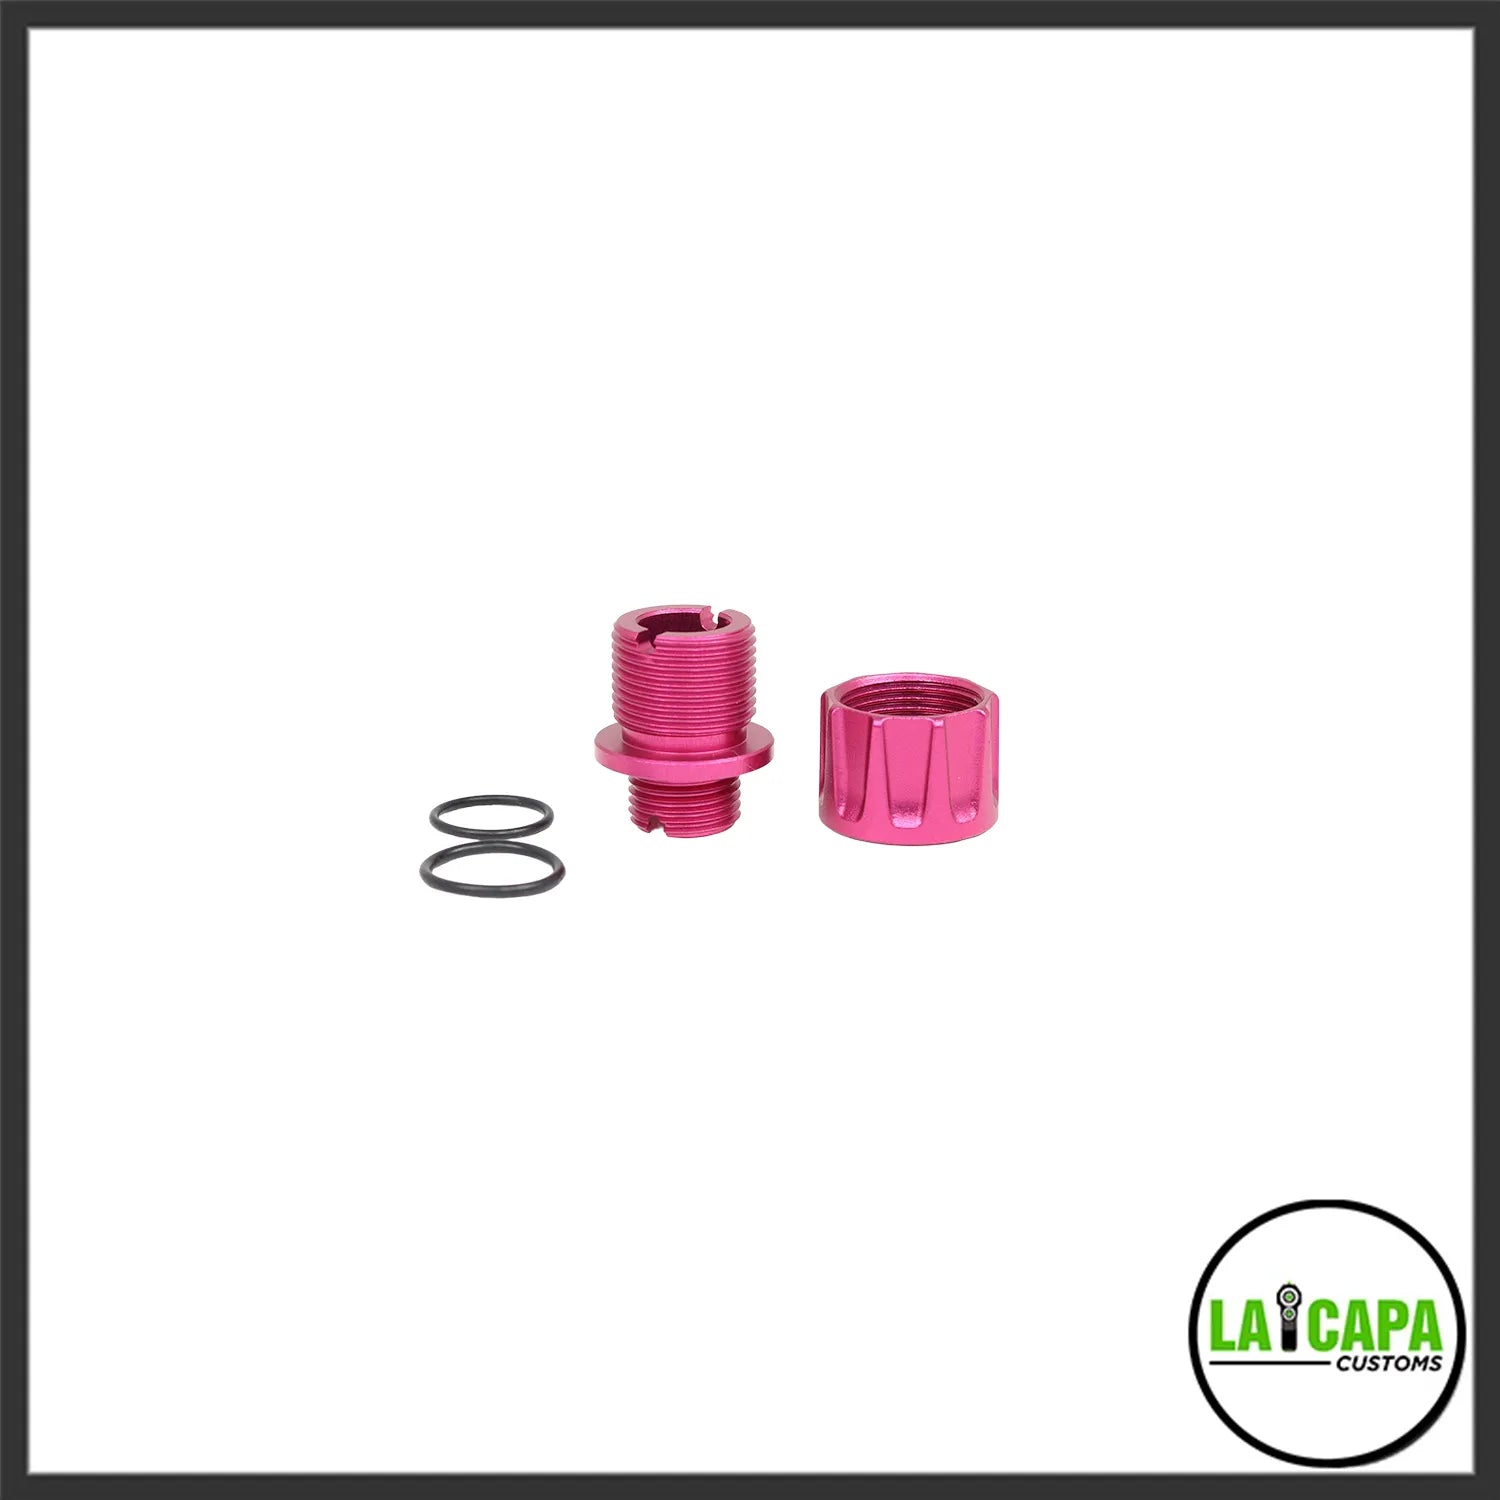 LA Capa Customs “S1” Reversible Thread Adapter for Hi Capa - Pink